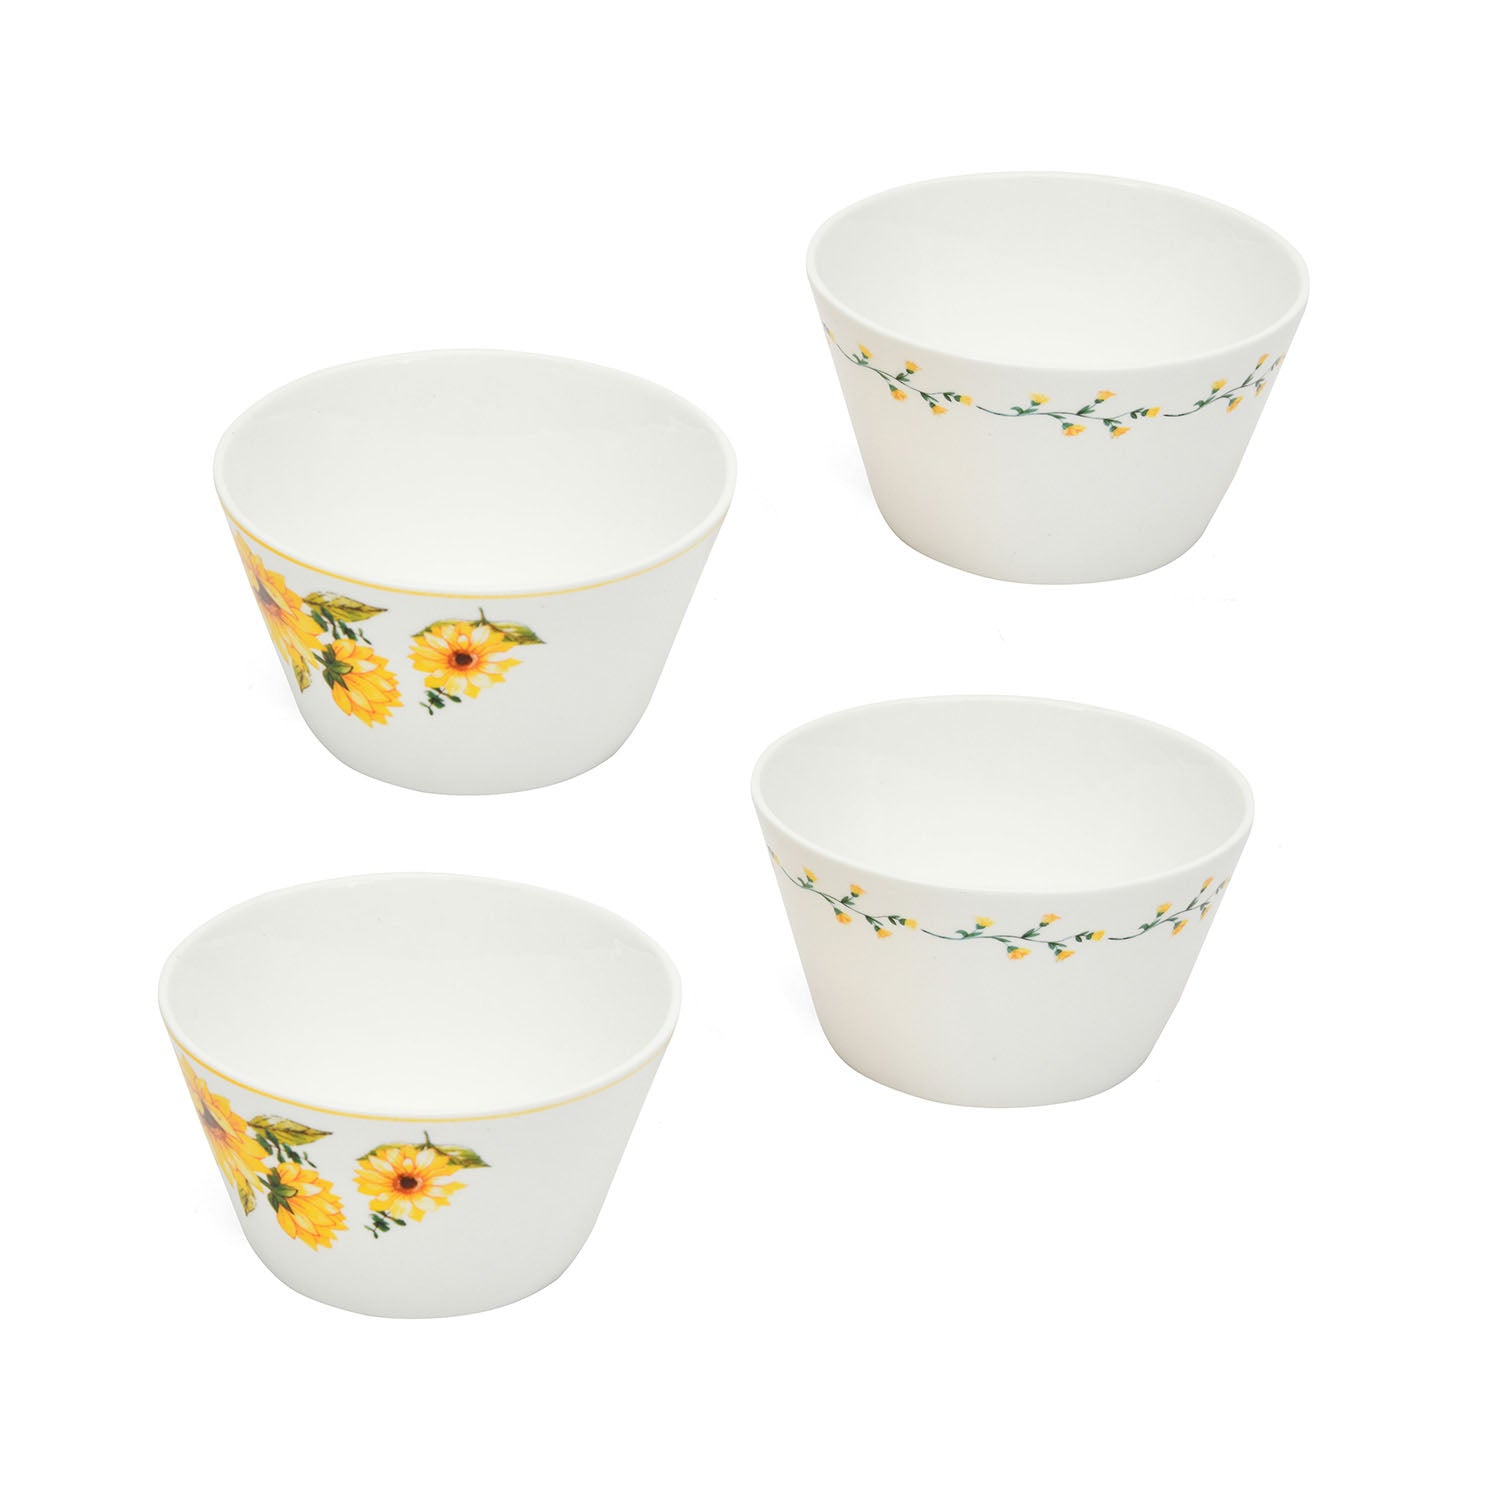 Clay Craft Ceramic 470 ml Bowls Set of 4 (Yellow & White)